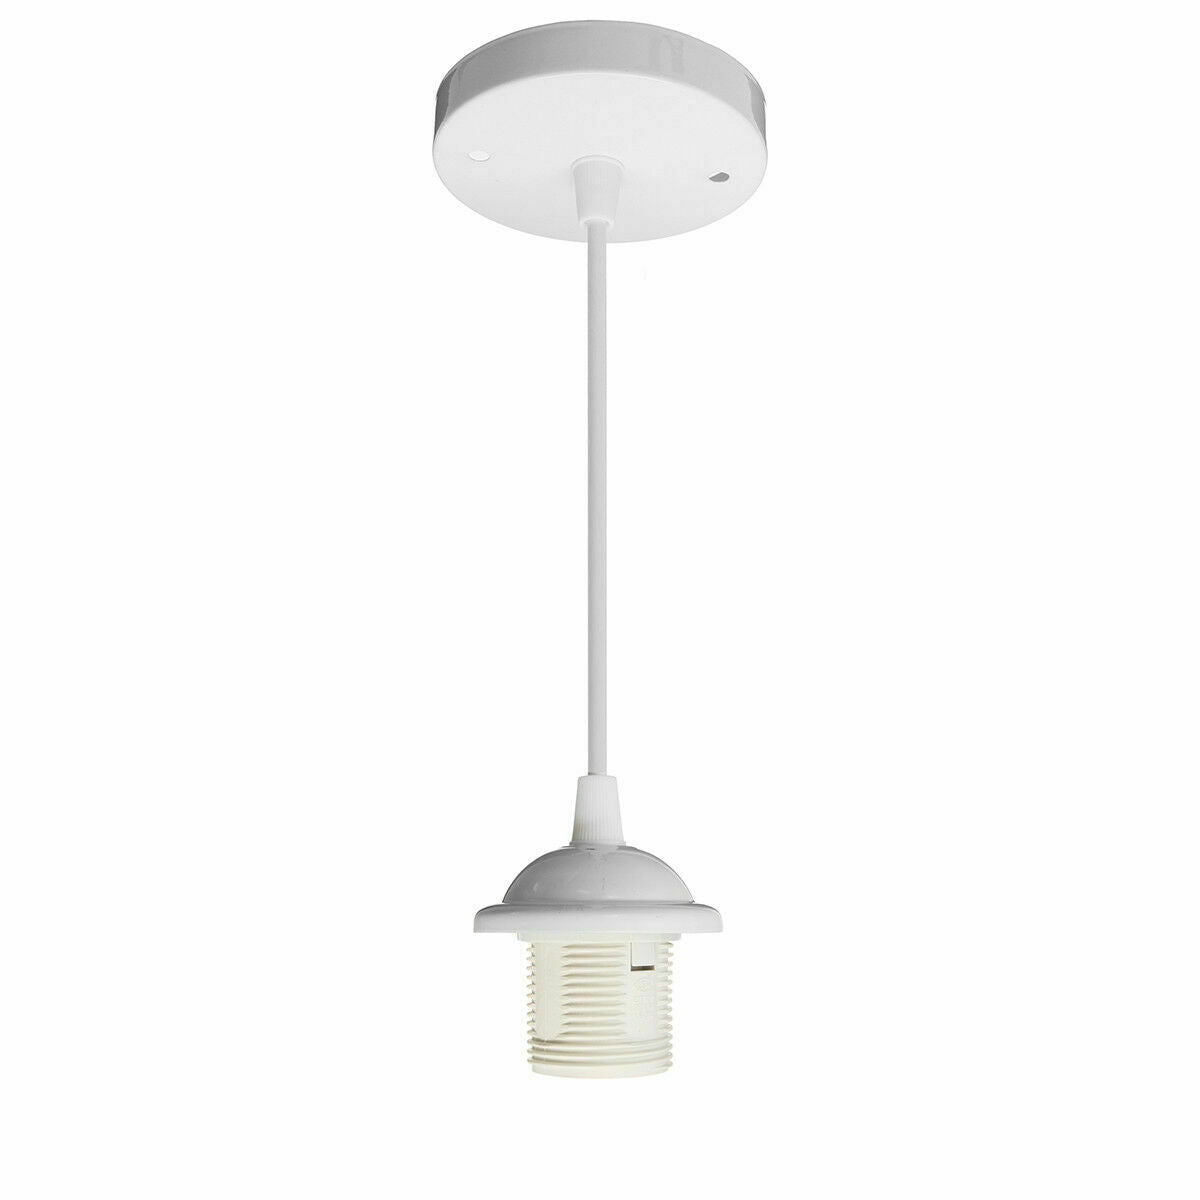 E27 Ceiling Rose White Light PVC Flex Pendant Lamp Holder Fitting~2378 - electricalsone UK Ltd